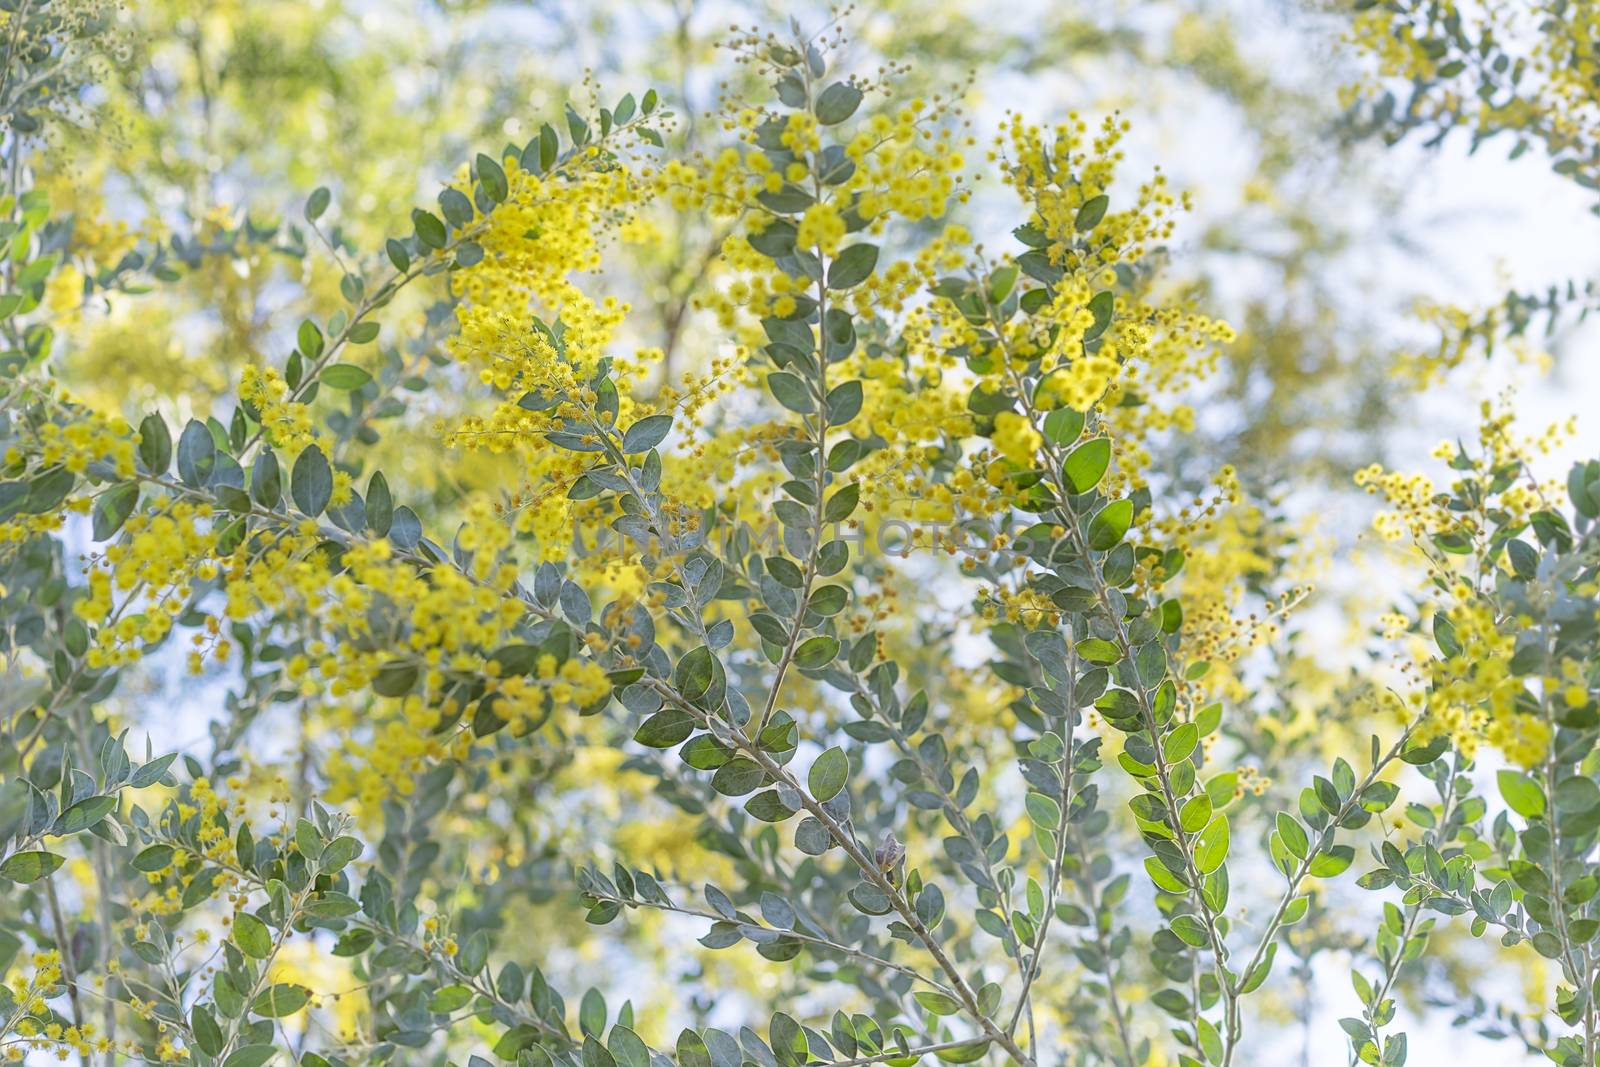 Queensland silver wattle tree in yellow fluffy flower bloom in winter in Australia